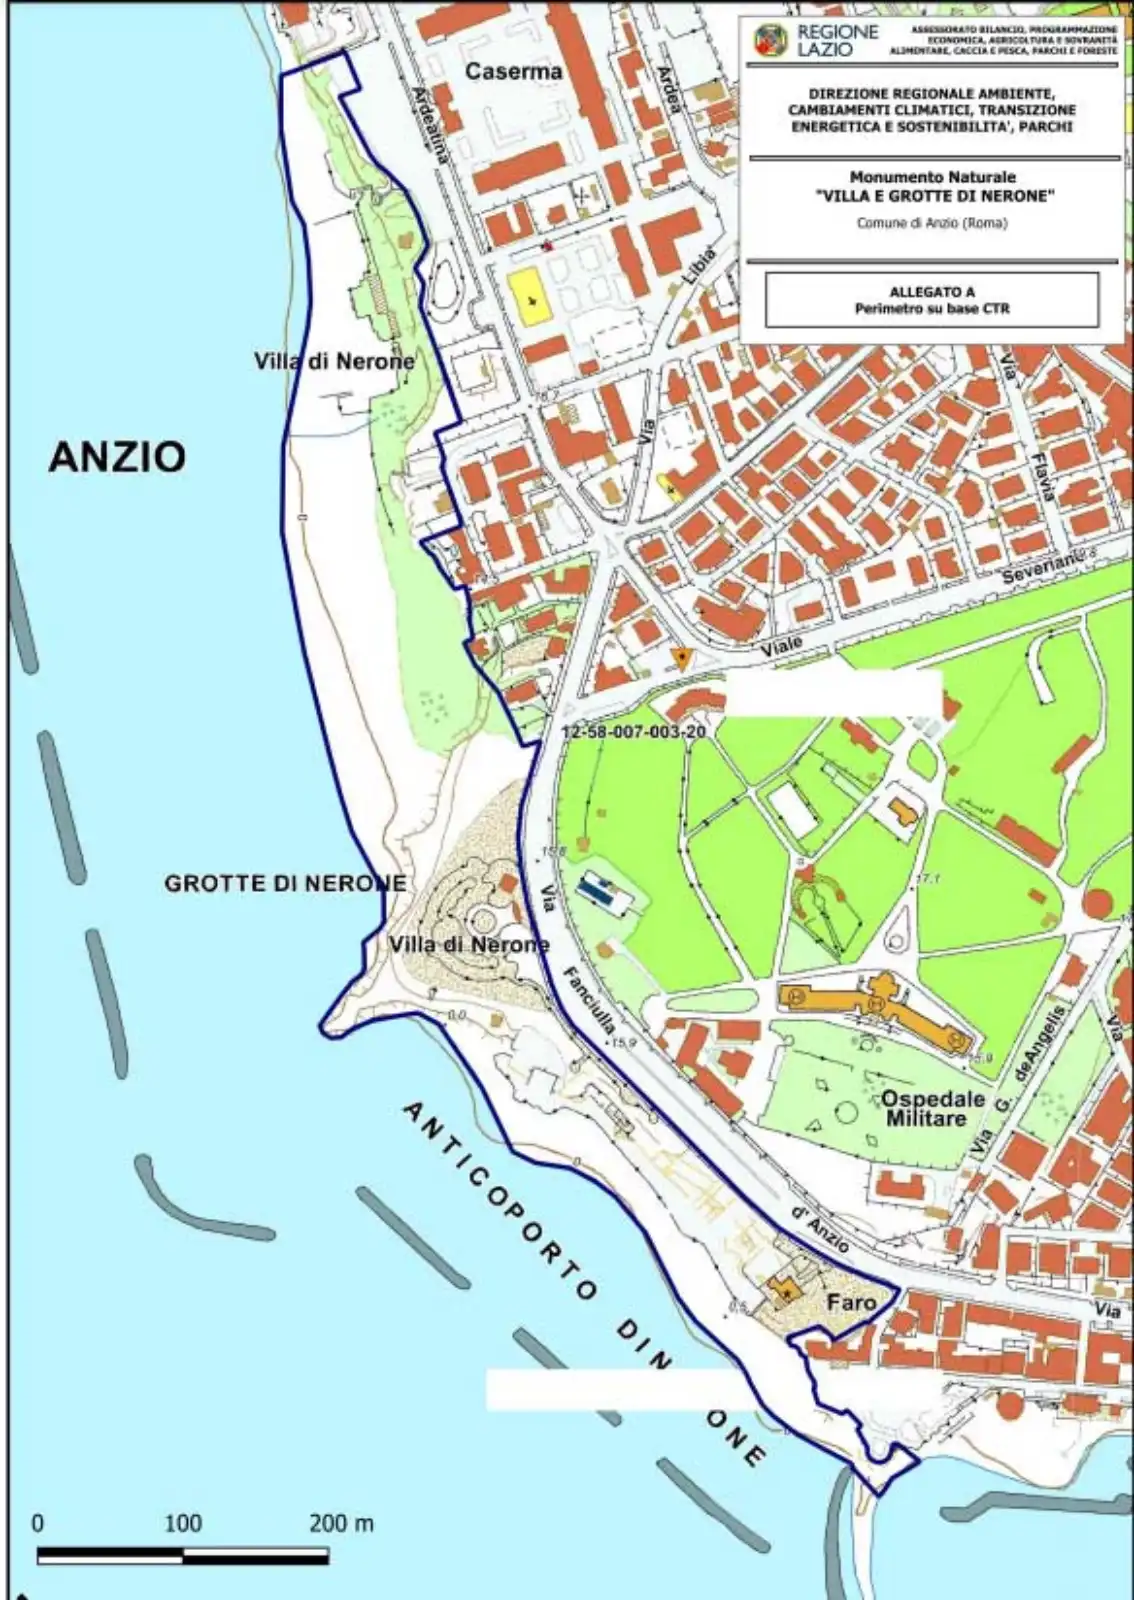 Mappa della zona delle Grotte di Nerone di Anzio candidata a Monumento naturale